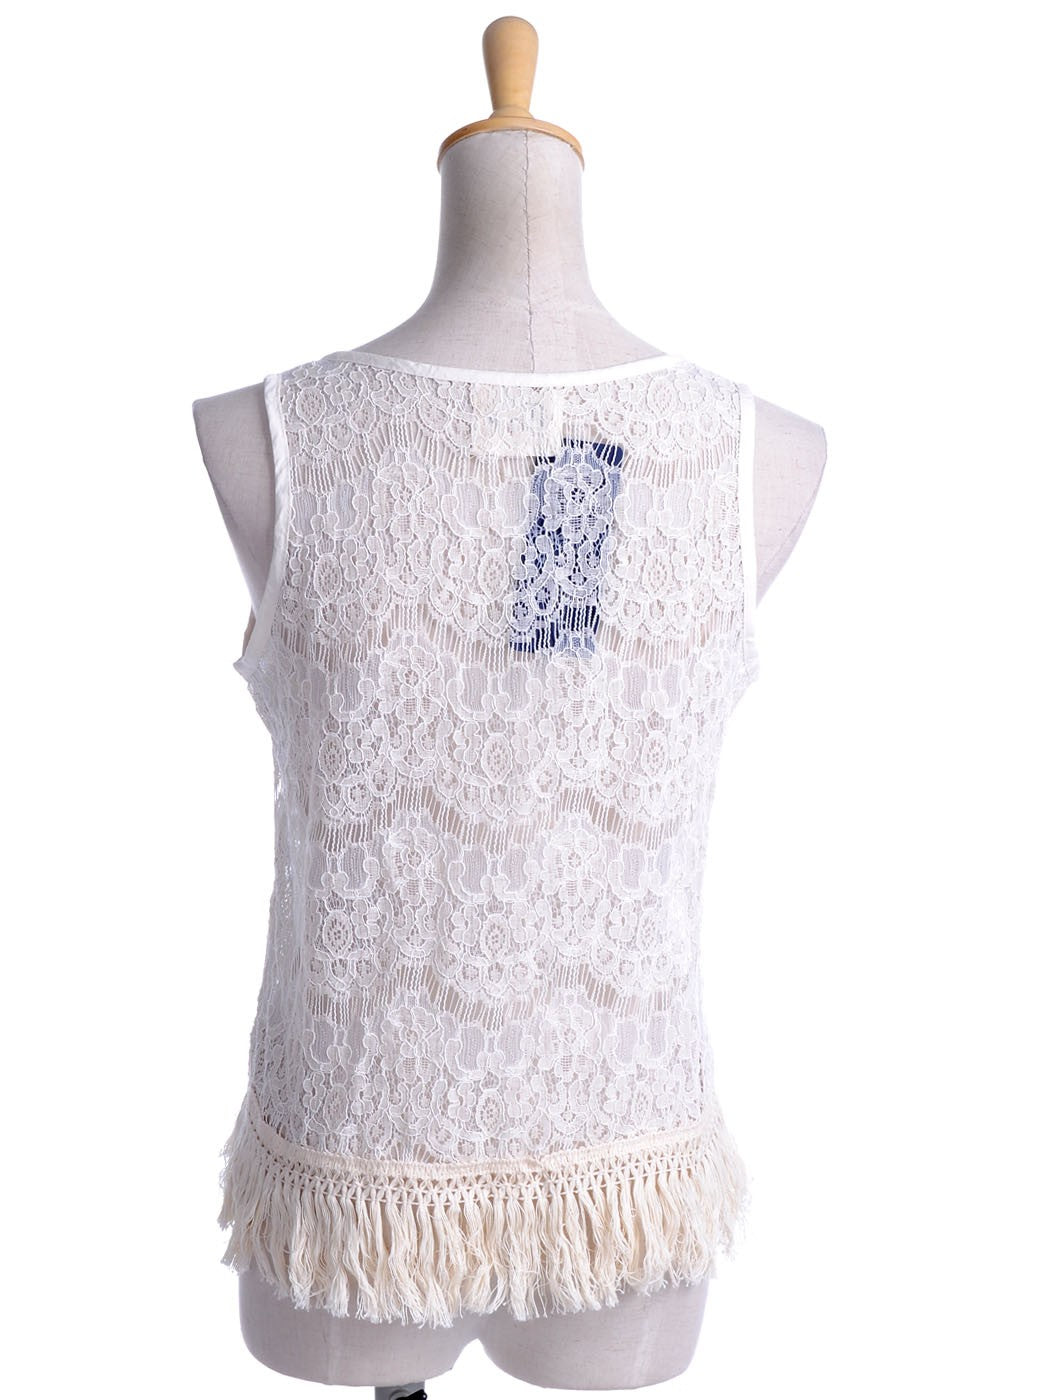 S/M Fit Beige Floral Knit Net Lace Soft Fringe Trim High Low Hem Top